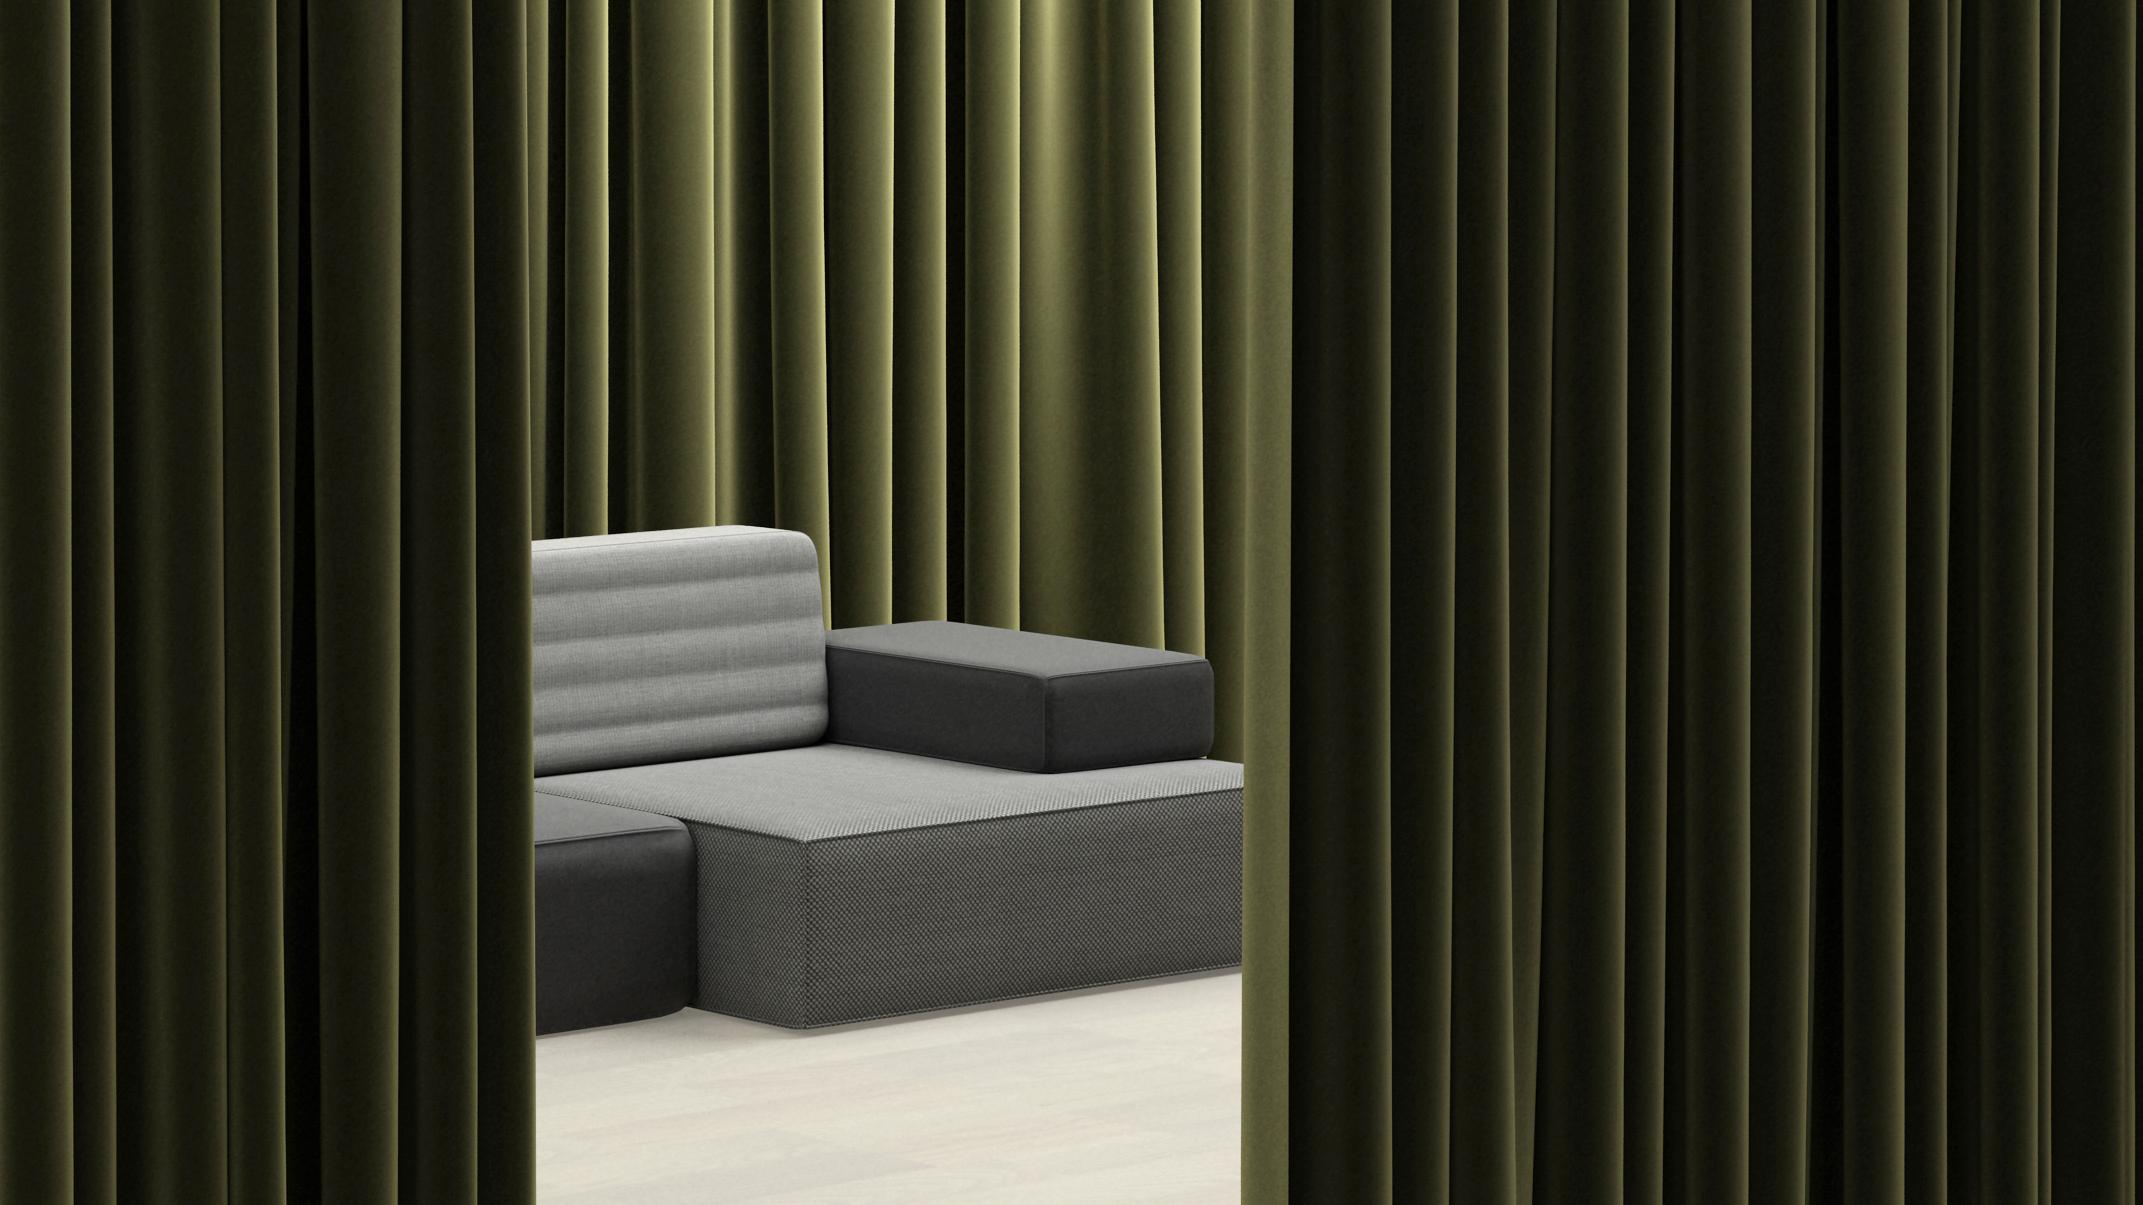 Das Combo-Sofa verwendet Leder, Wolle und Stoffe, um die modulare Erweiterung und die Spleißung fortzusetzen, während es die Klassik begrüßt und die neue Erfahrung zum Ausdruck bringt, die lebendig und voller dramatischer Veränderungen